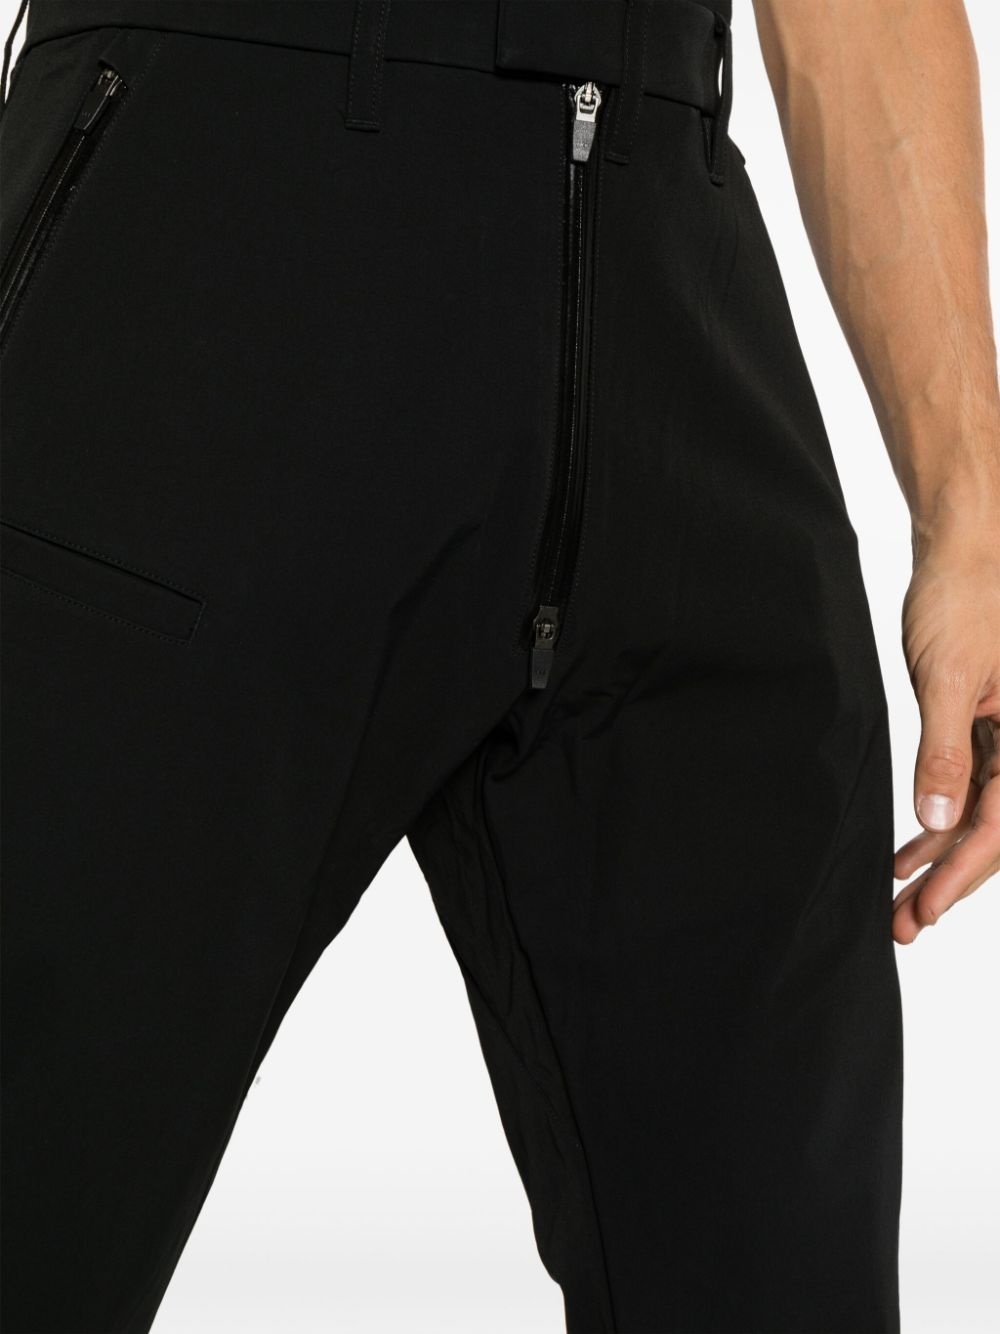 P47 SchoellerÂ® Dryskinâ¢ drop-crotch trousers - 4